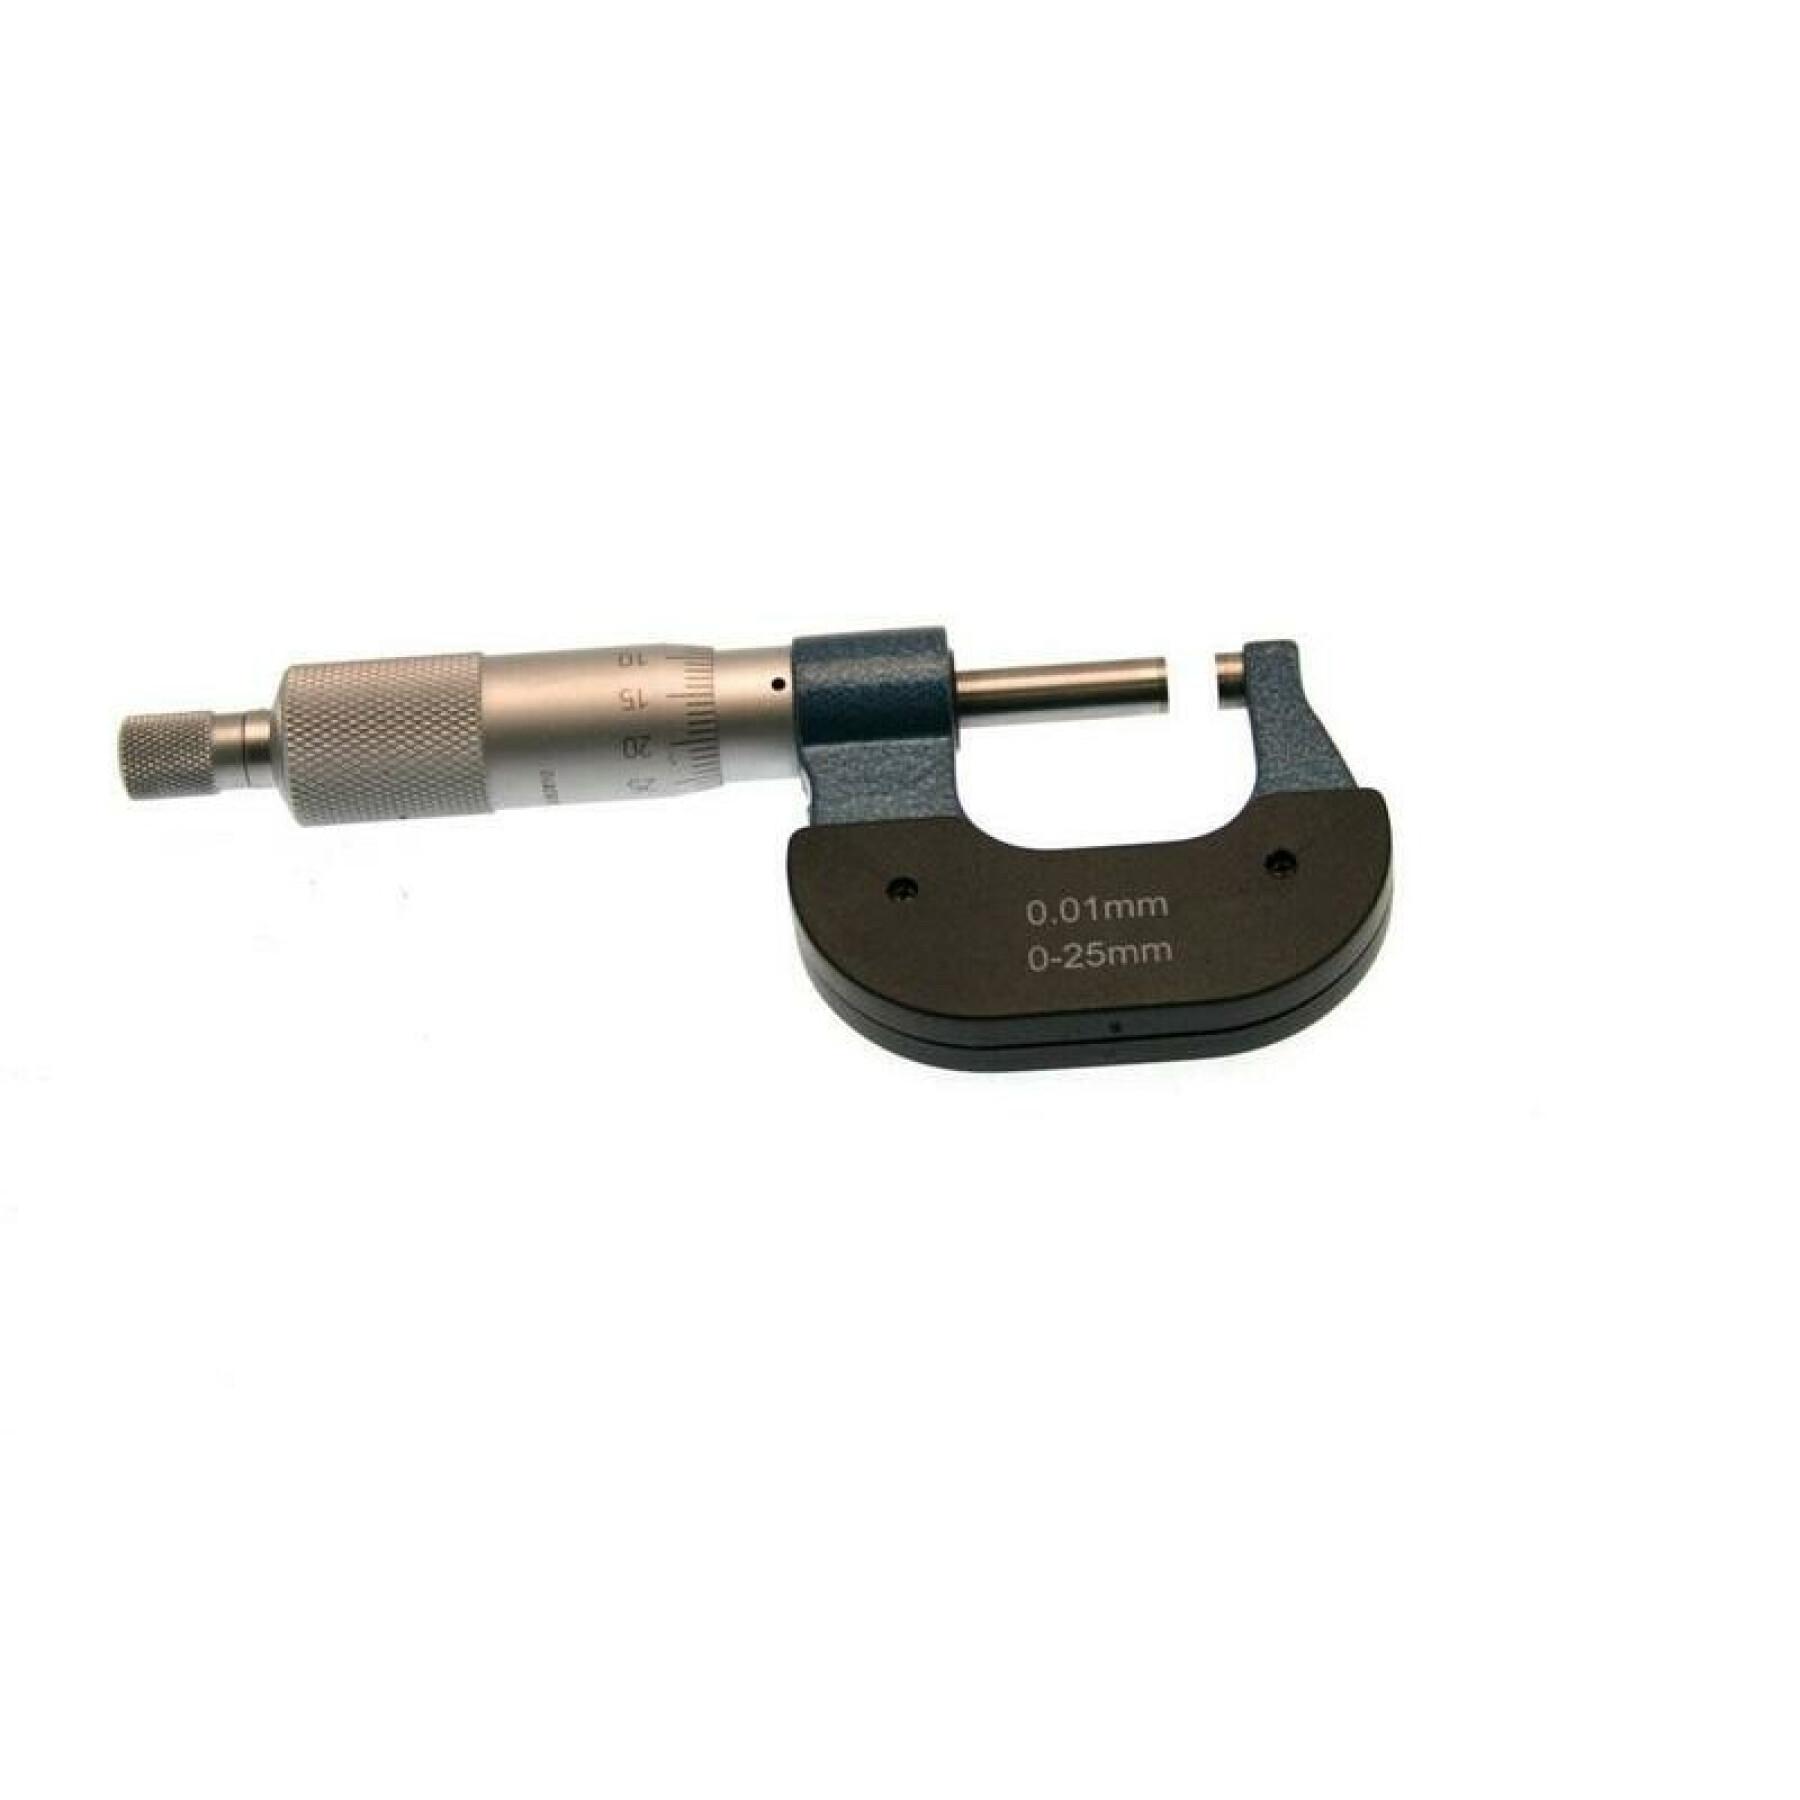 Mechanical micrometer Draper 0-25mm